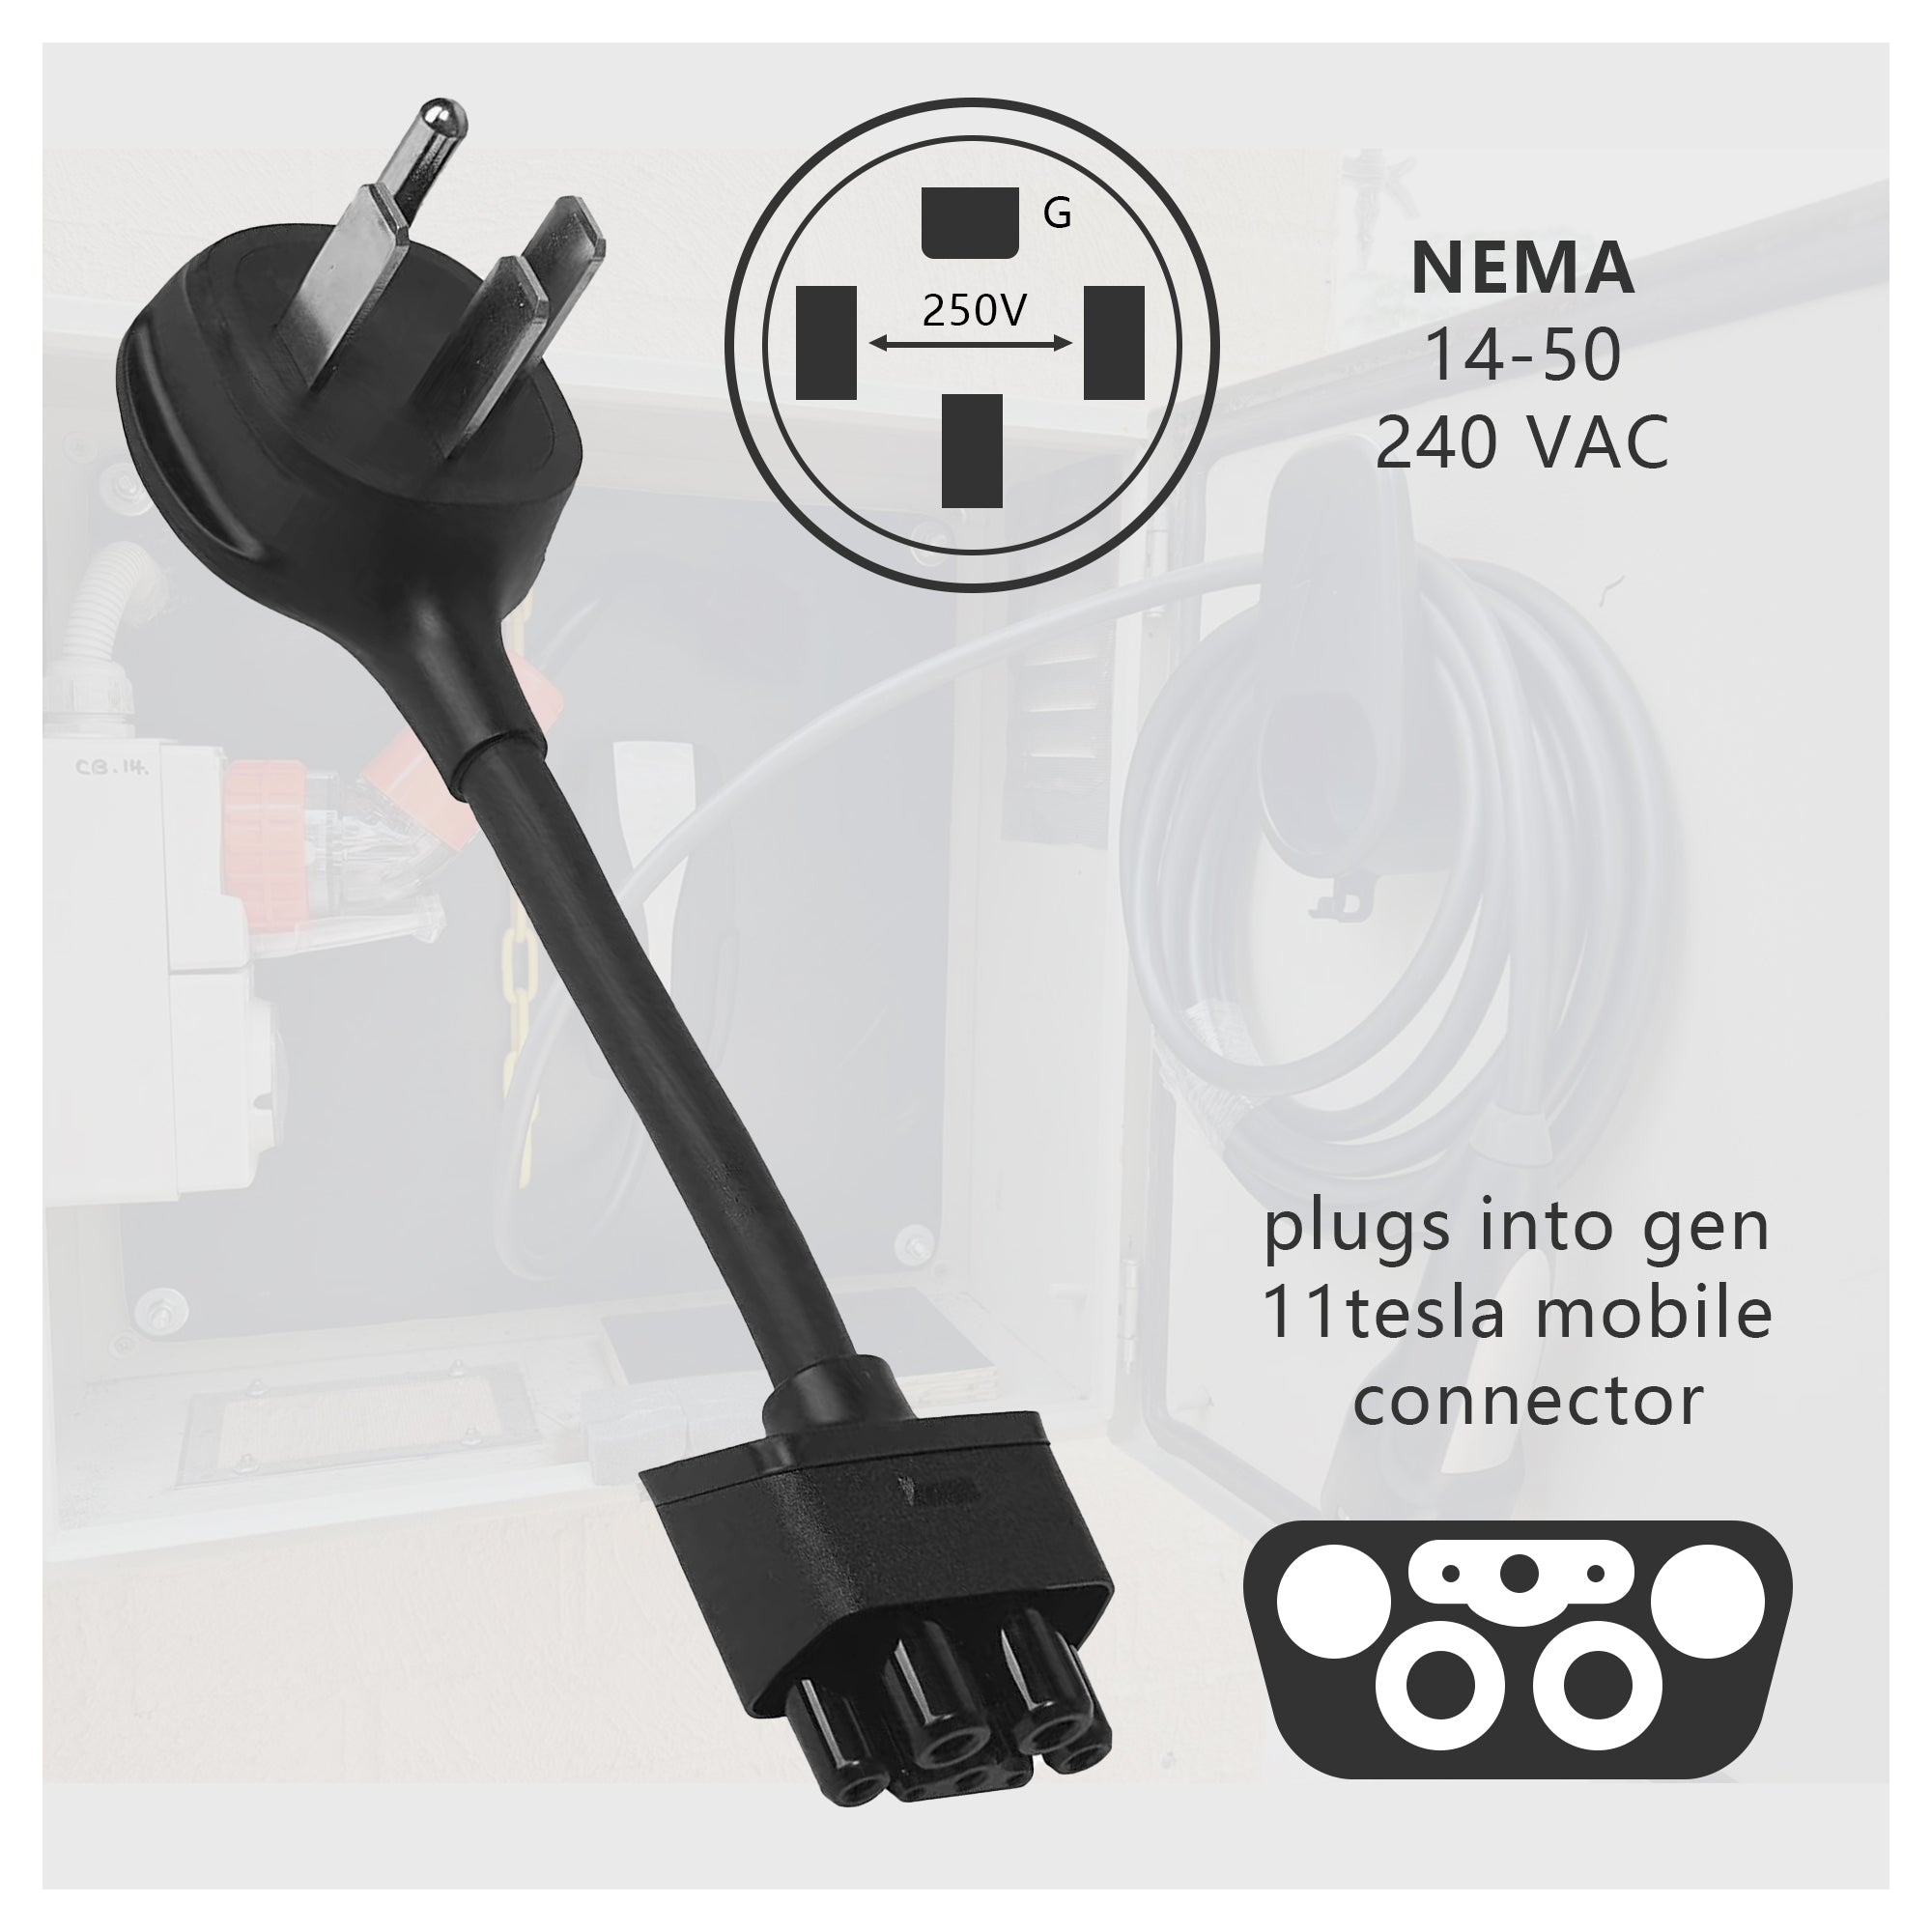 Gen 2 NEMA 14-50 Adapter for Tesla Mobile Portable Charger NEMA 14-50 240V Outlet